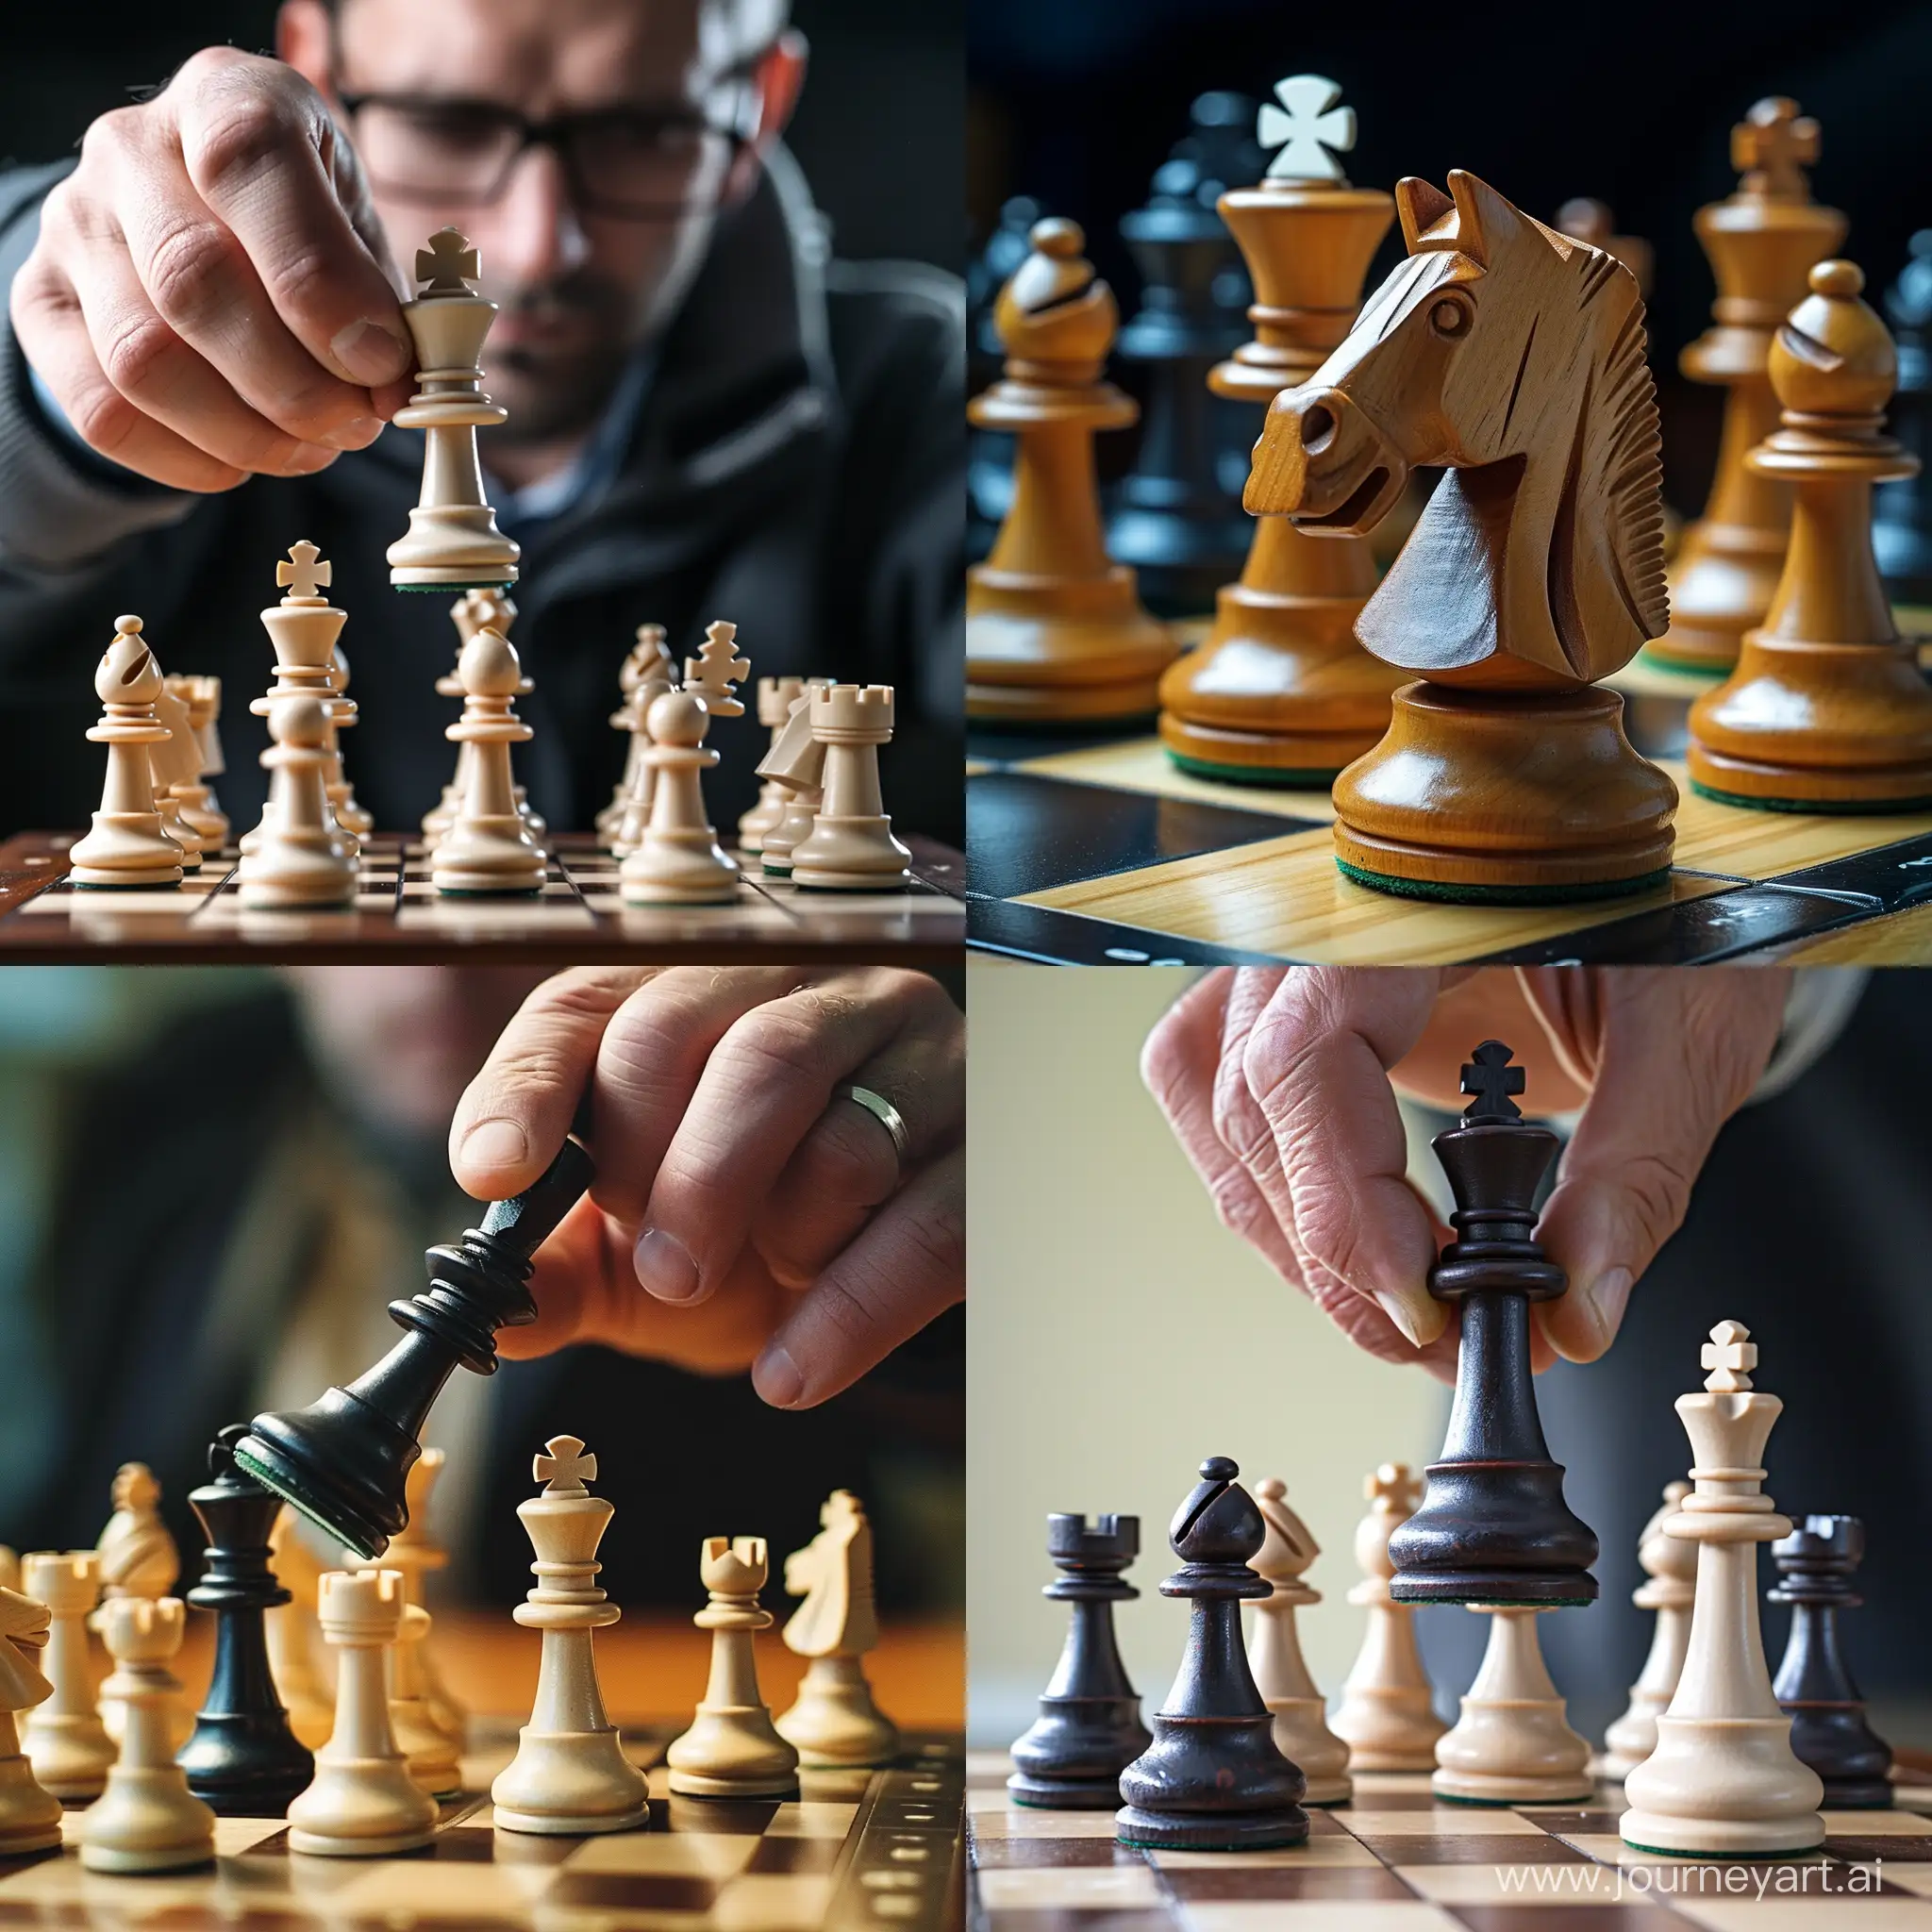 объявление о преподавания уроков по шахматам